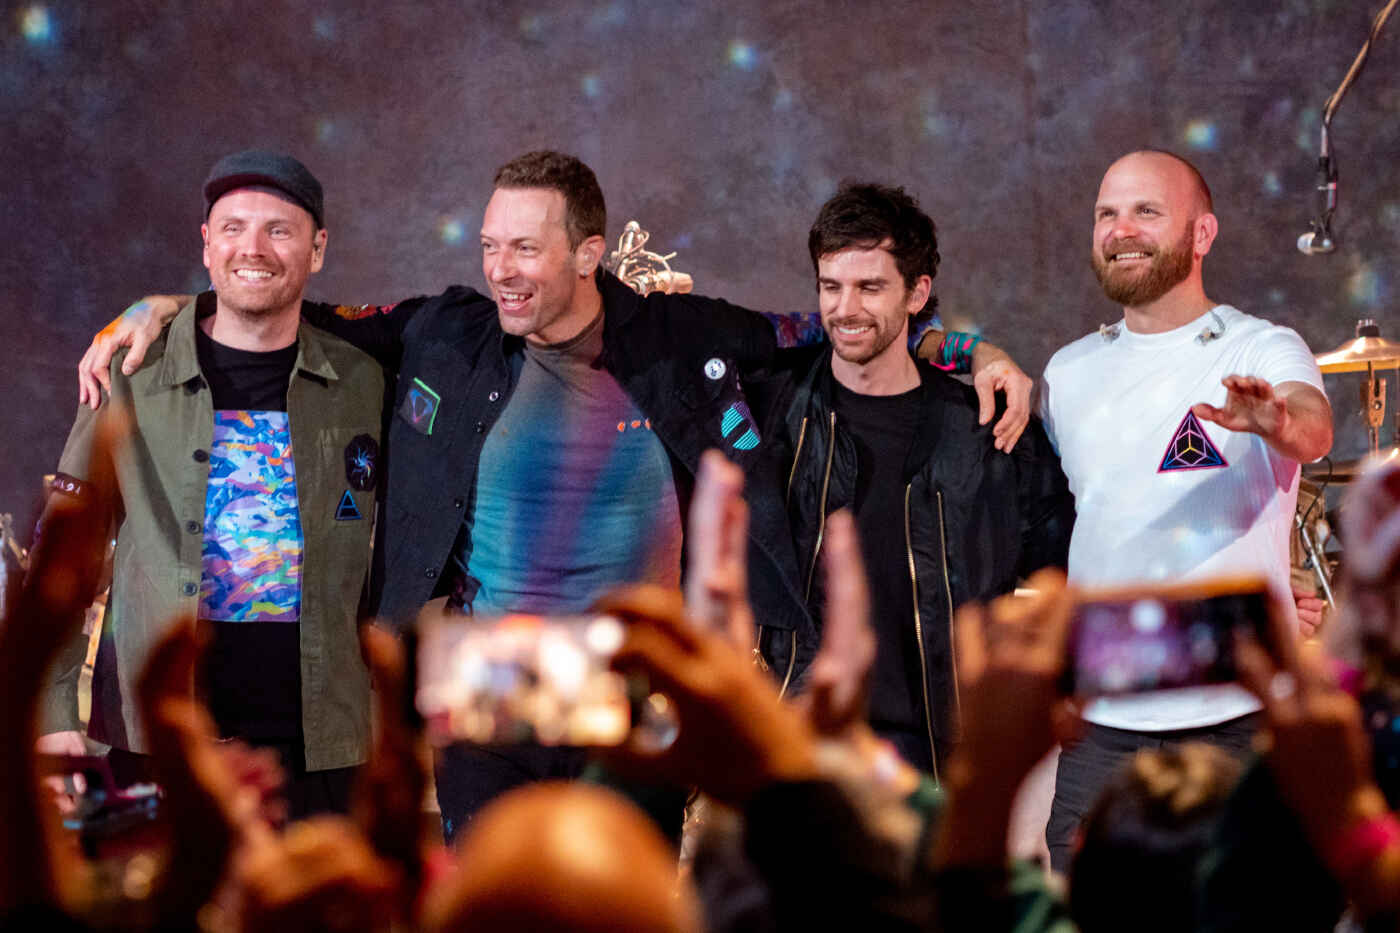 Jurusan Personil Coldplay - Education Republic